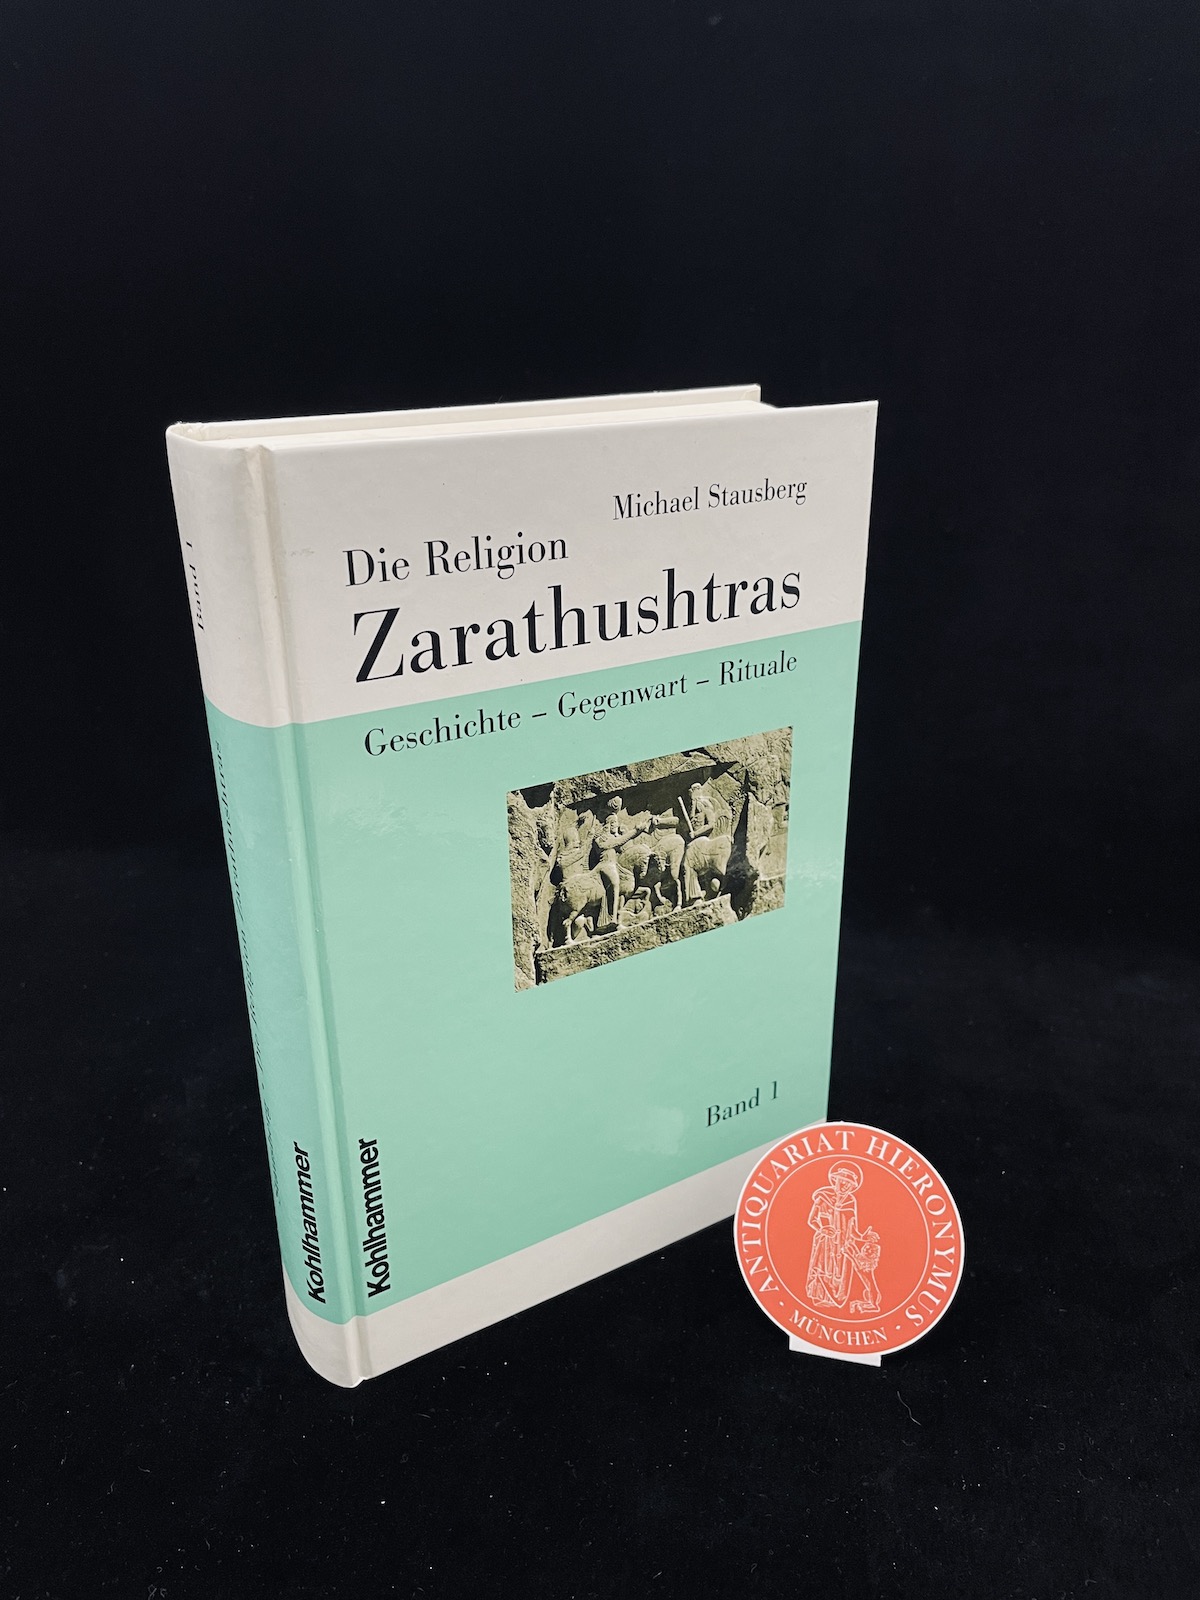 Die Religion Zarathushtras. Geschichte - Gegenwart - Rituale. - Stausberg, Michael.